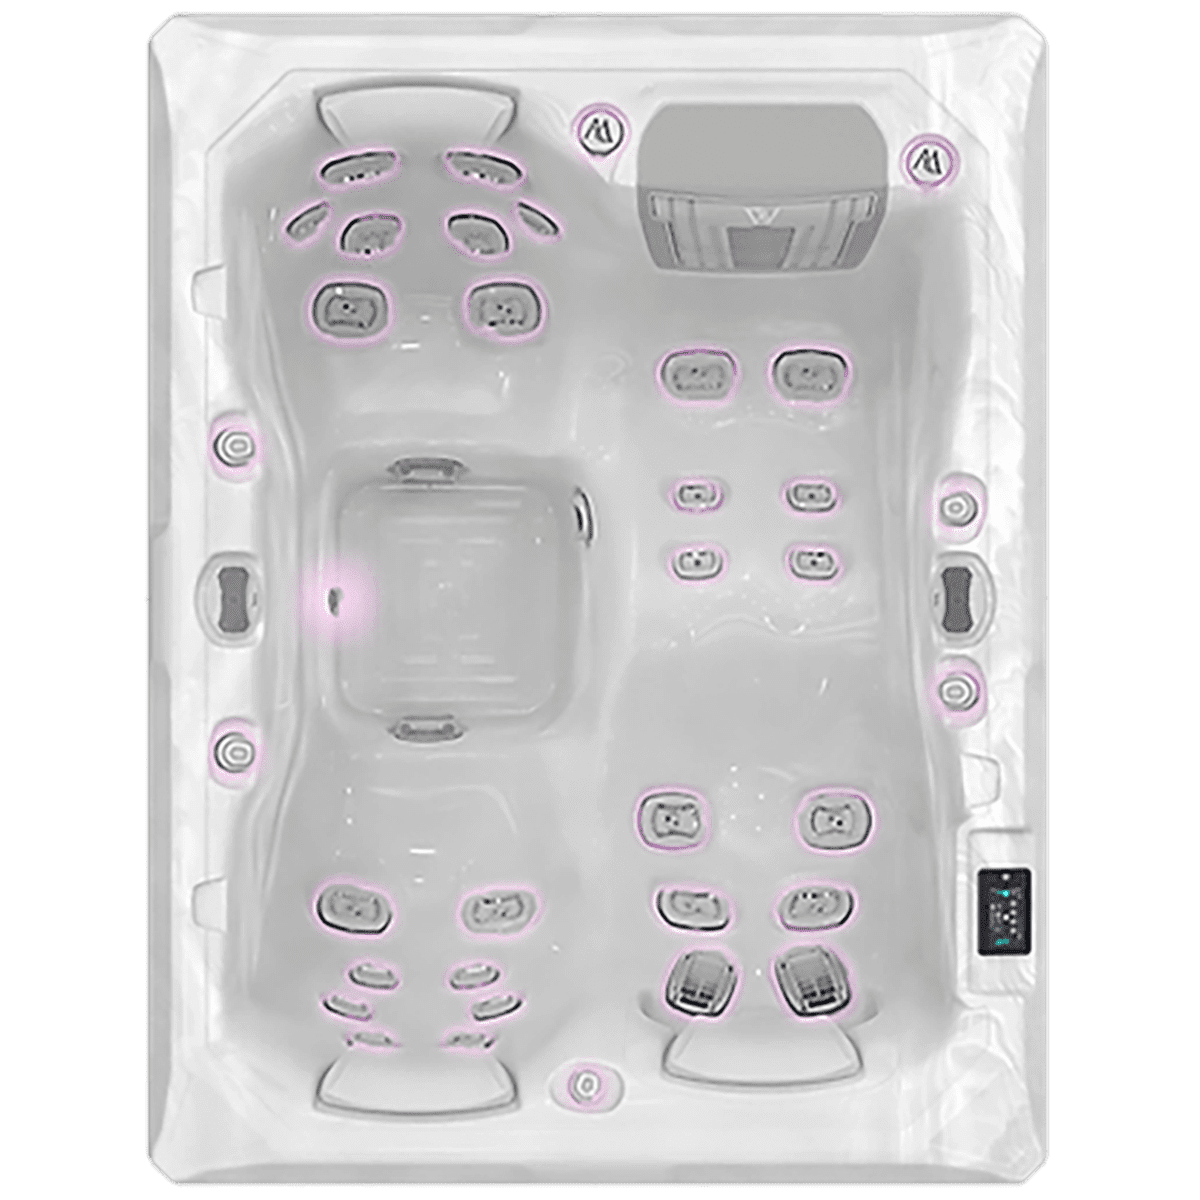 spa blanc teide de Wellis avec 3 places et des jets de massage, led intégrées